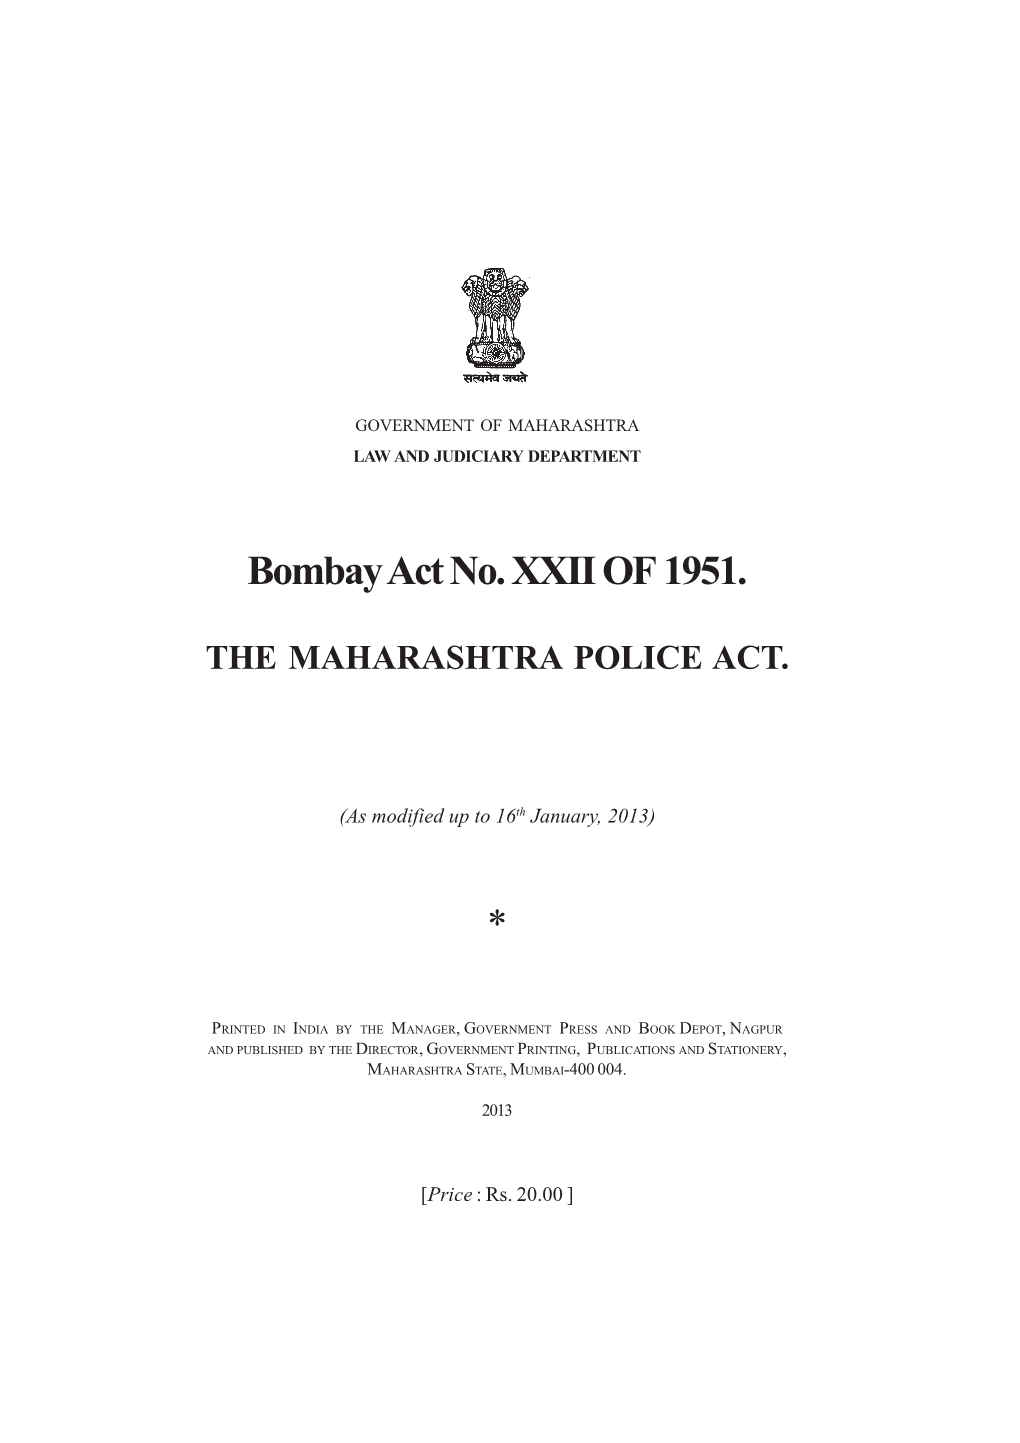 Bombay Act No. XXII of 1951. the MAHARASHTRA POLICE ACT